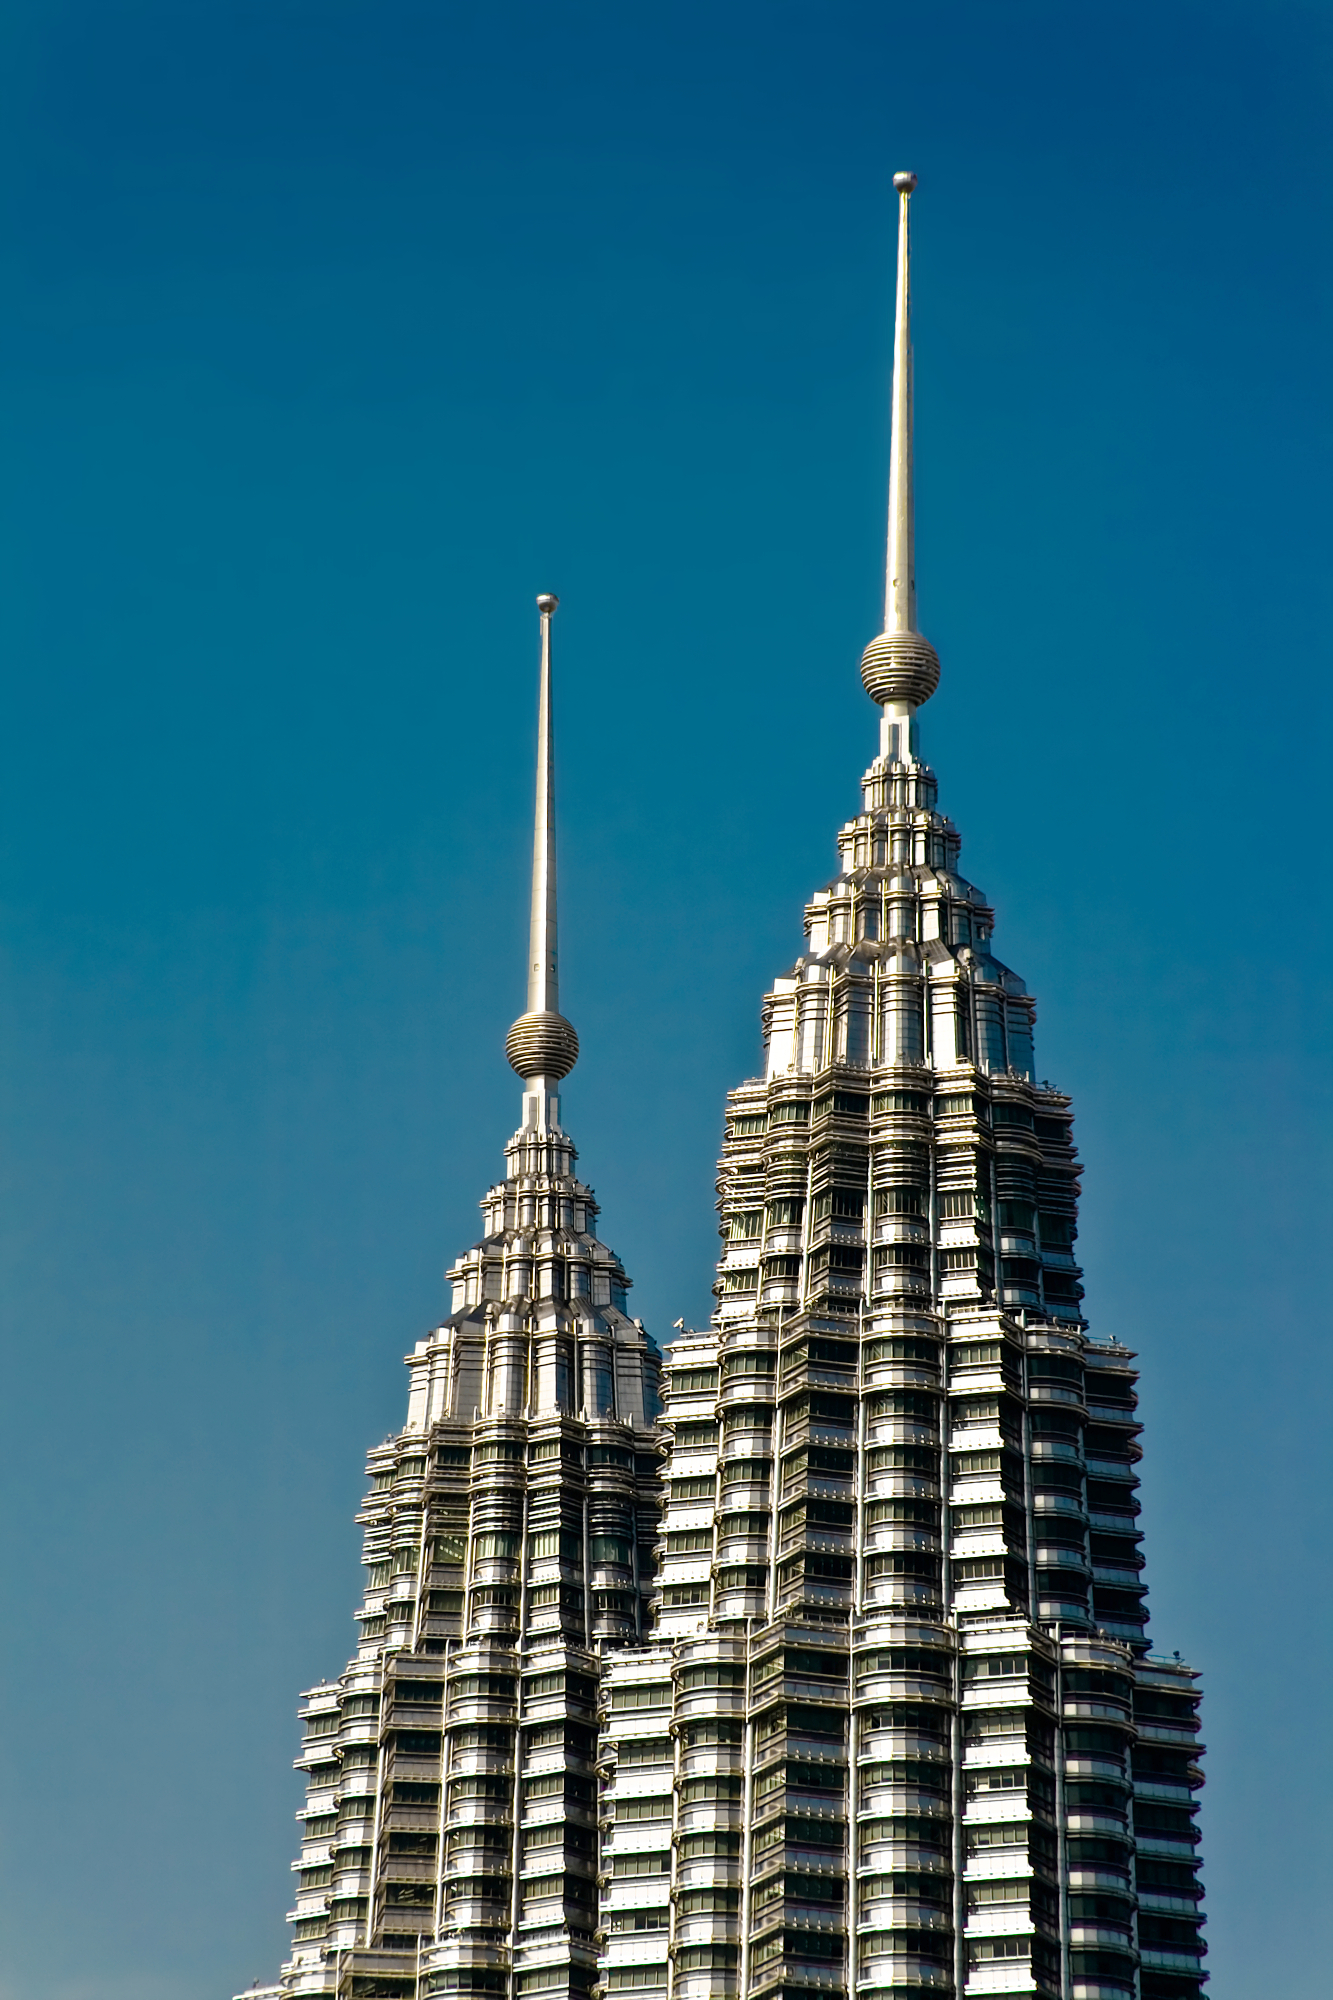 Petronas towers tip